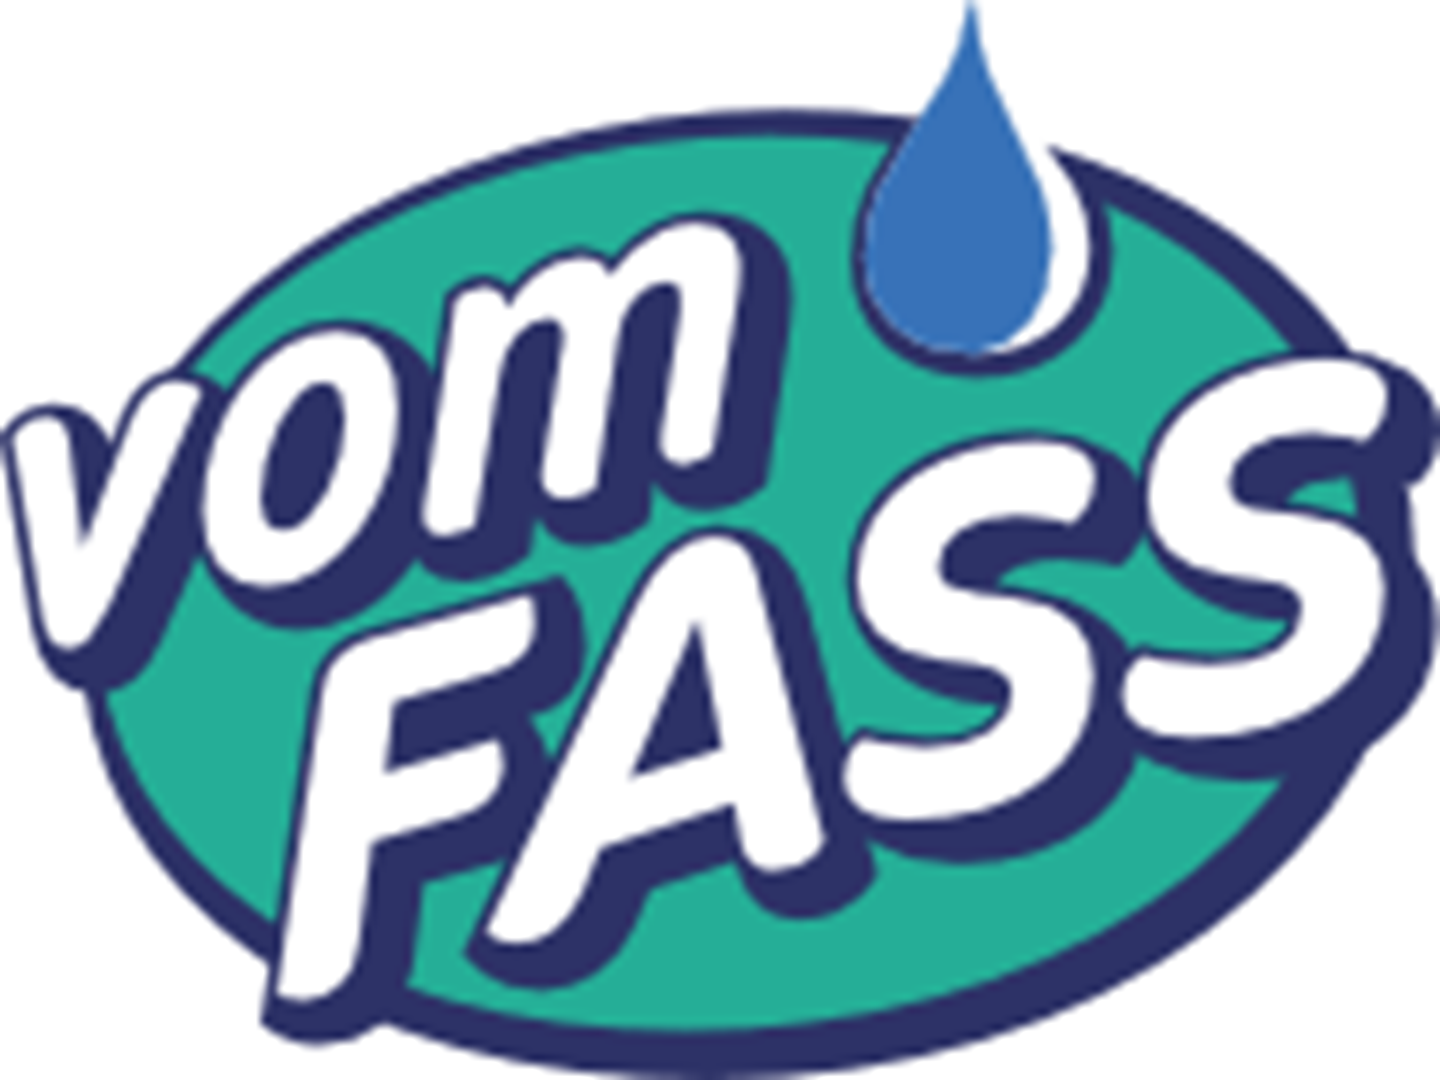 vomFASS Landshut Logo